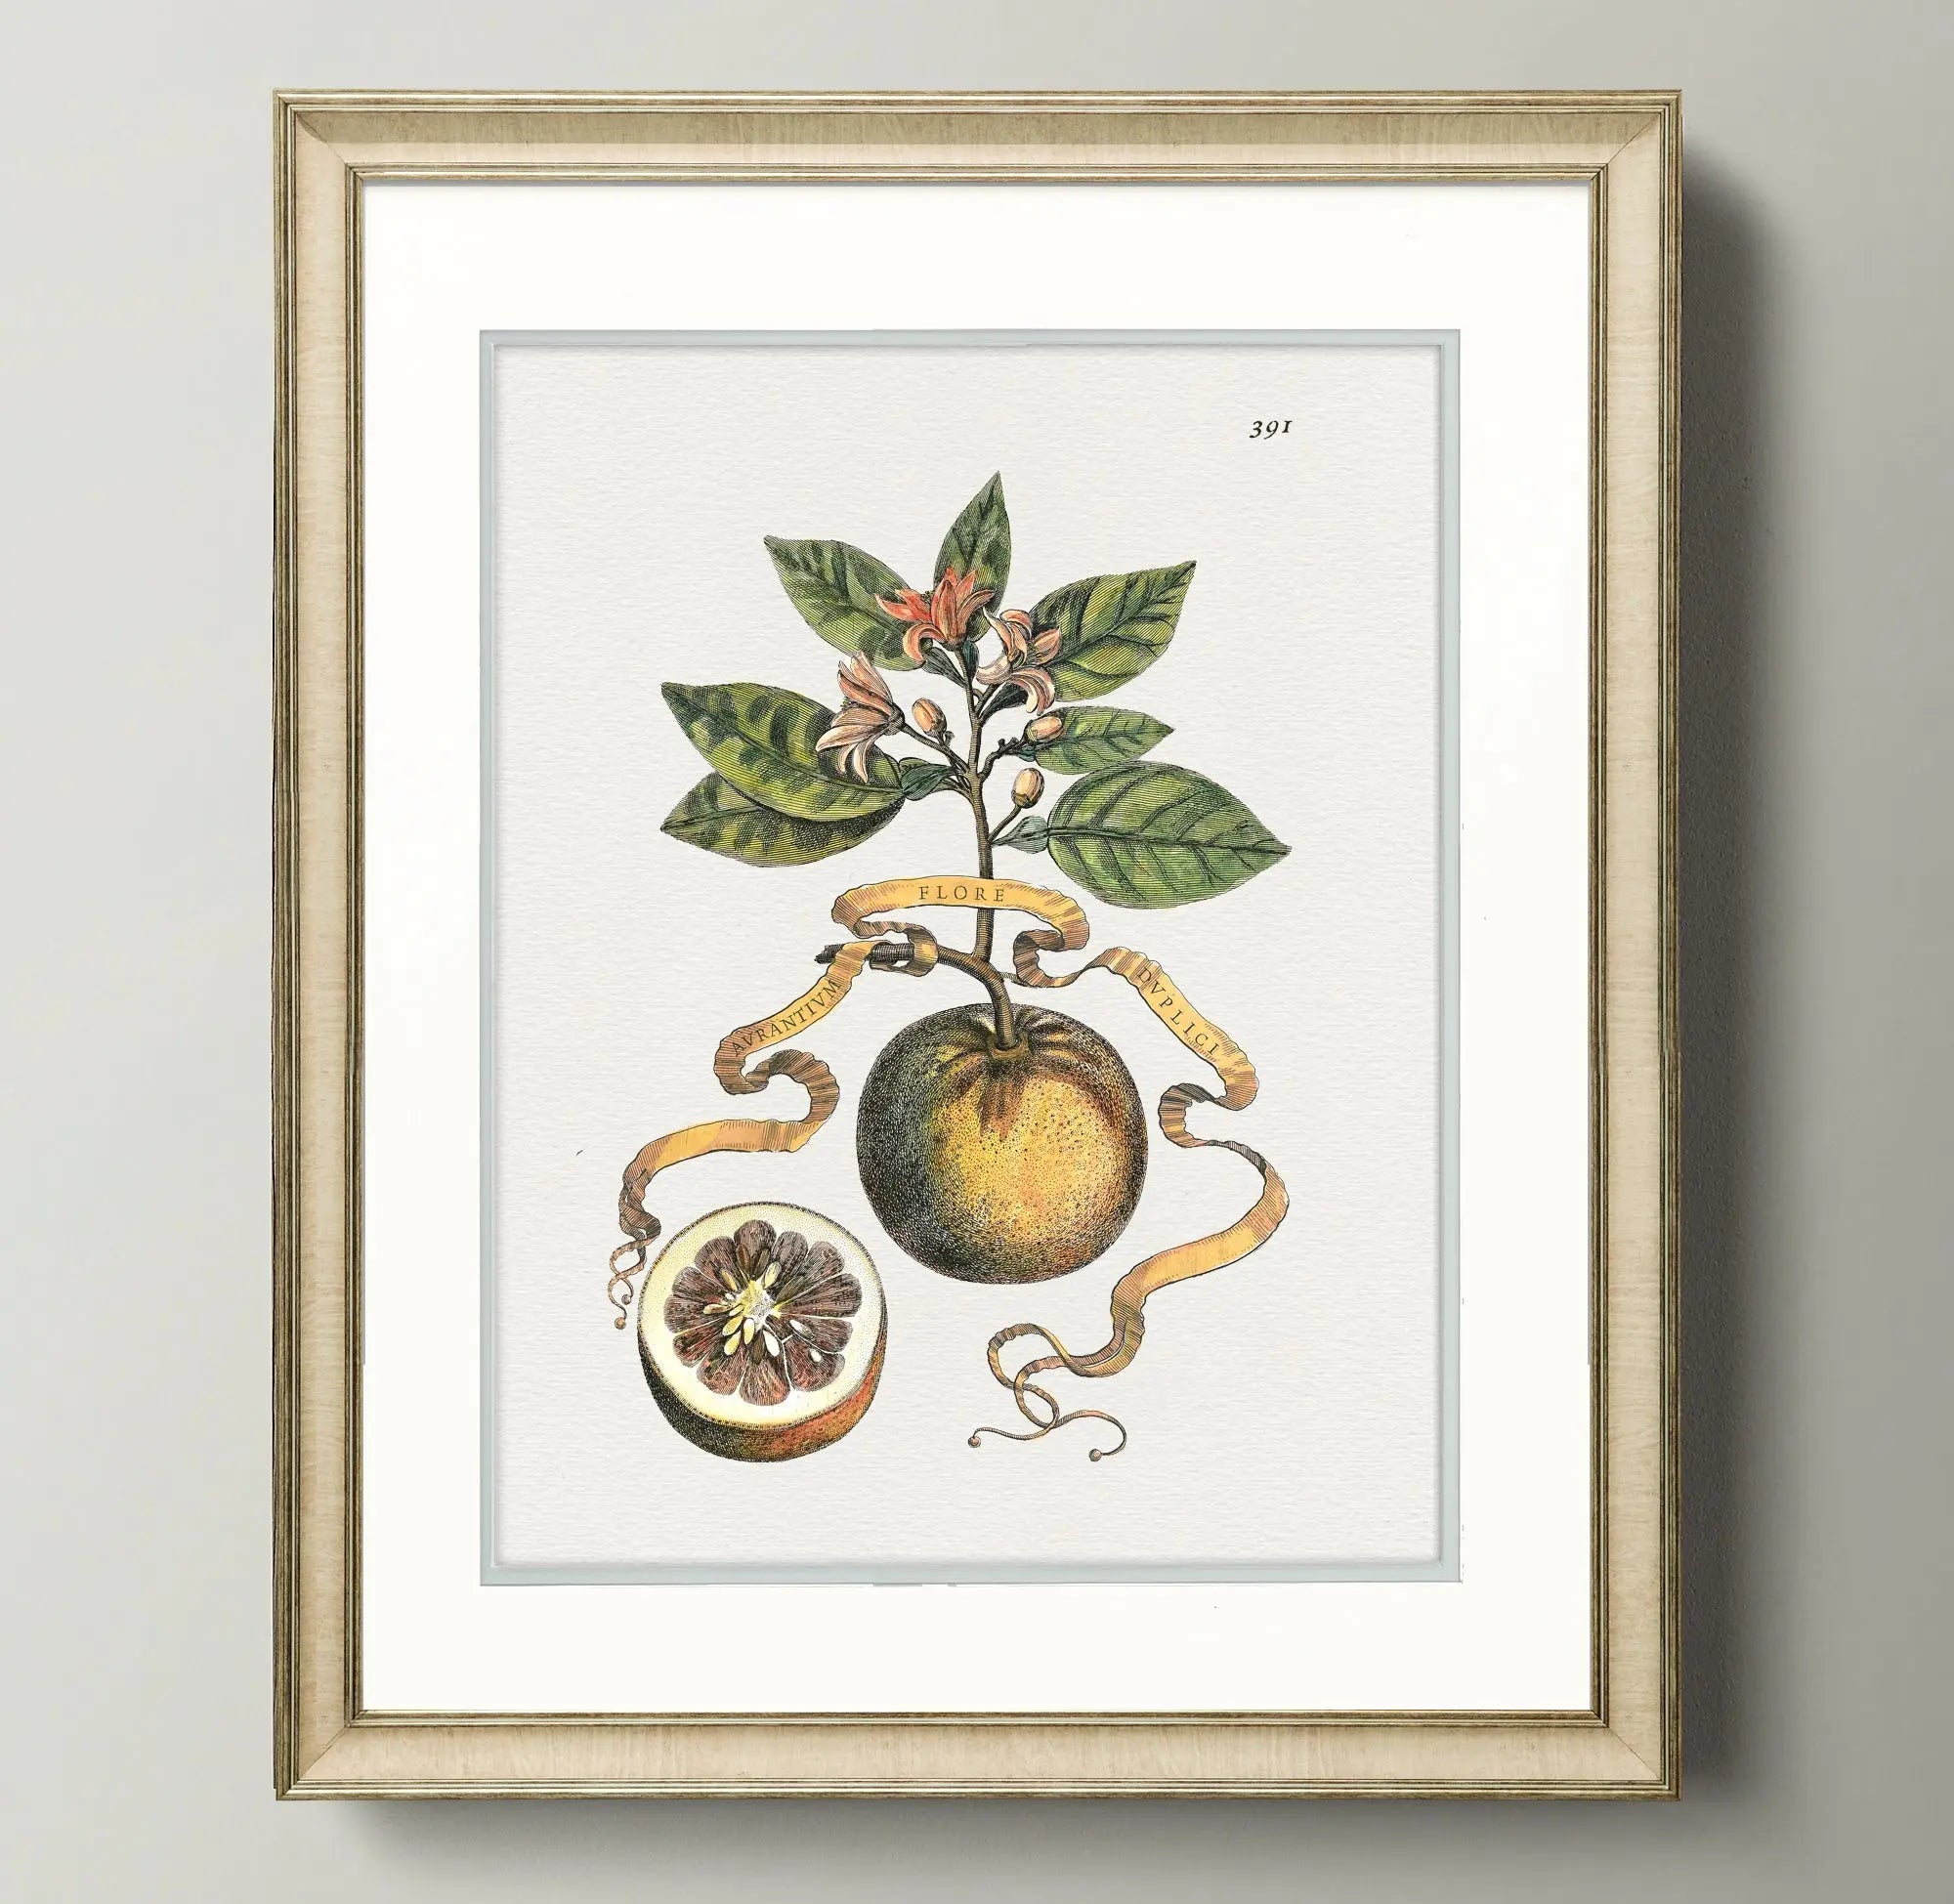 Naturalist Watercolor Illustrations: Citrus Botanicals - Emblem Atelier